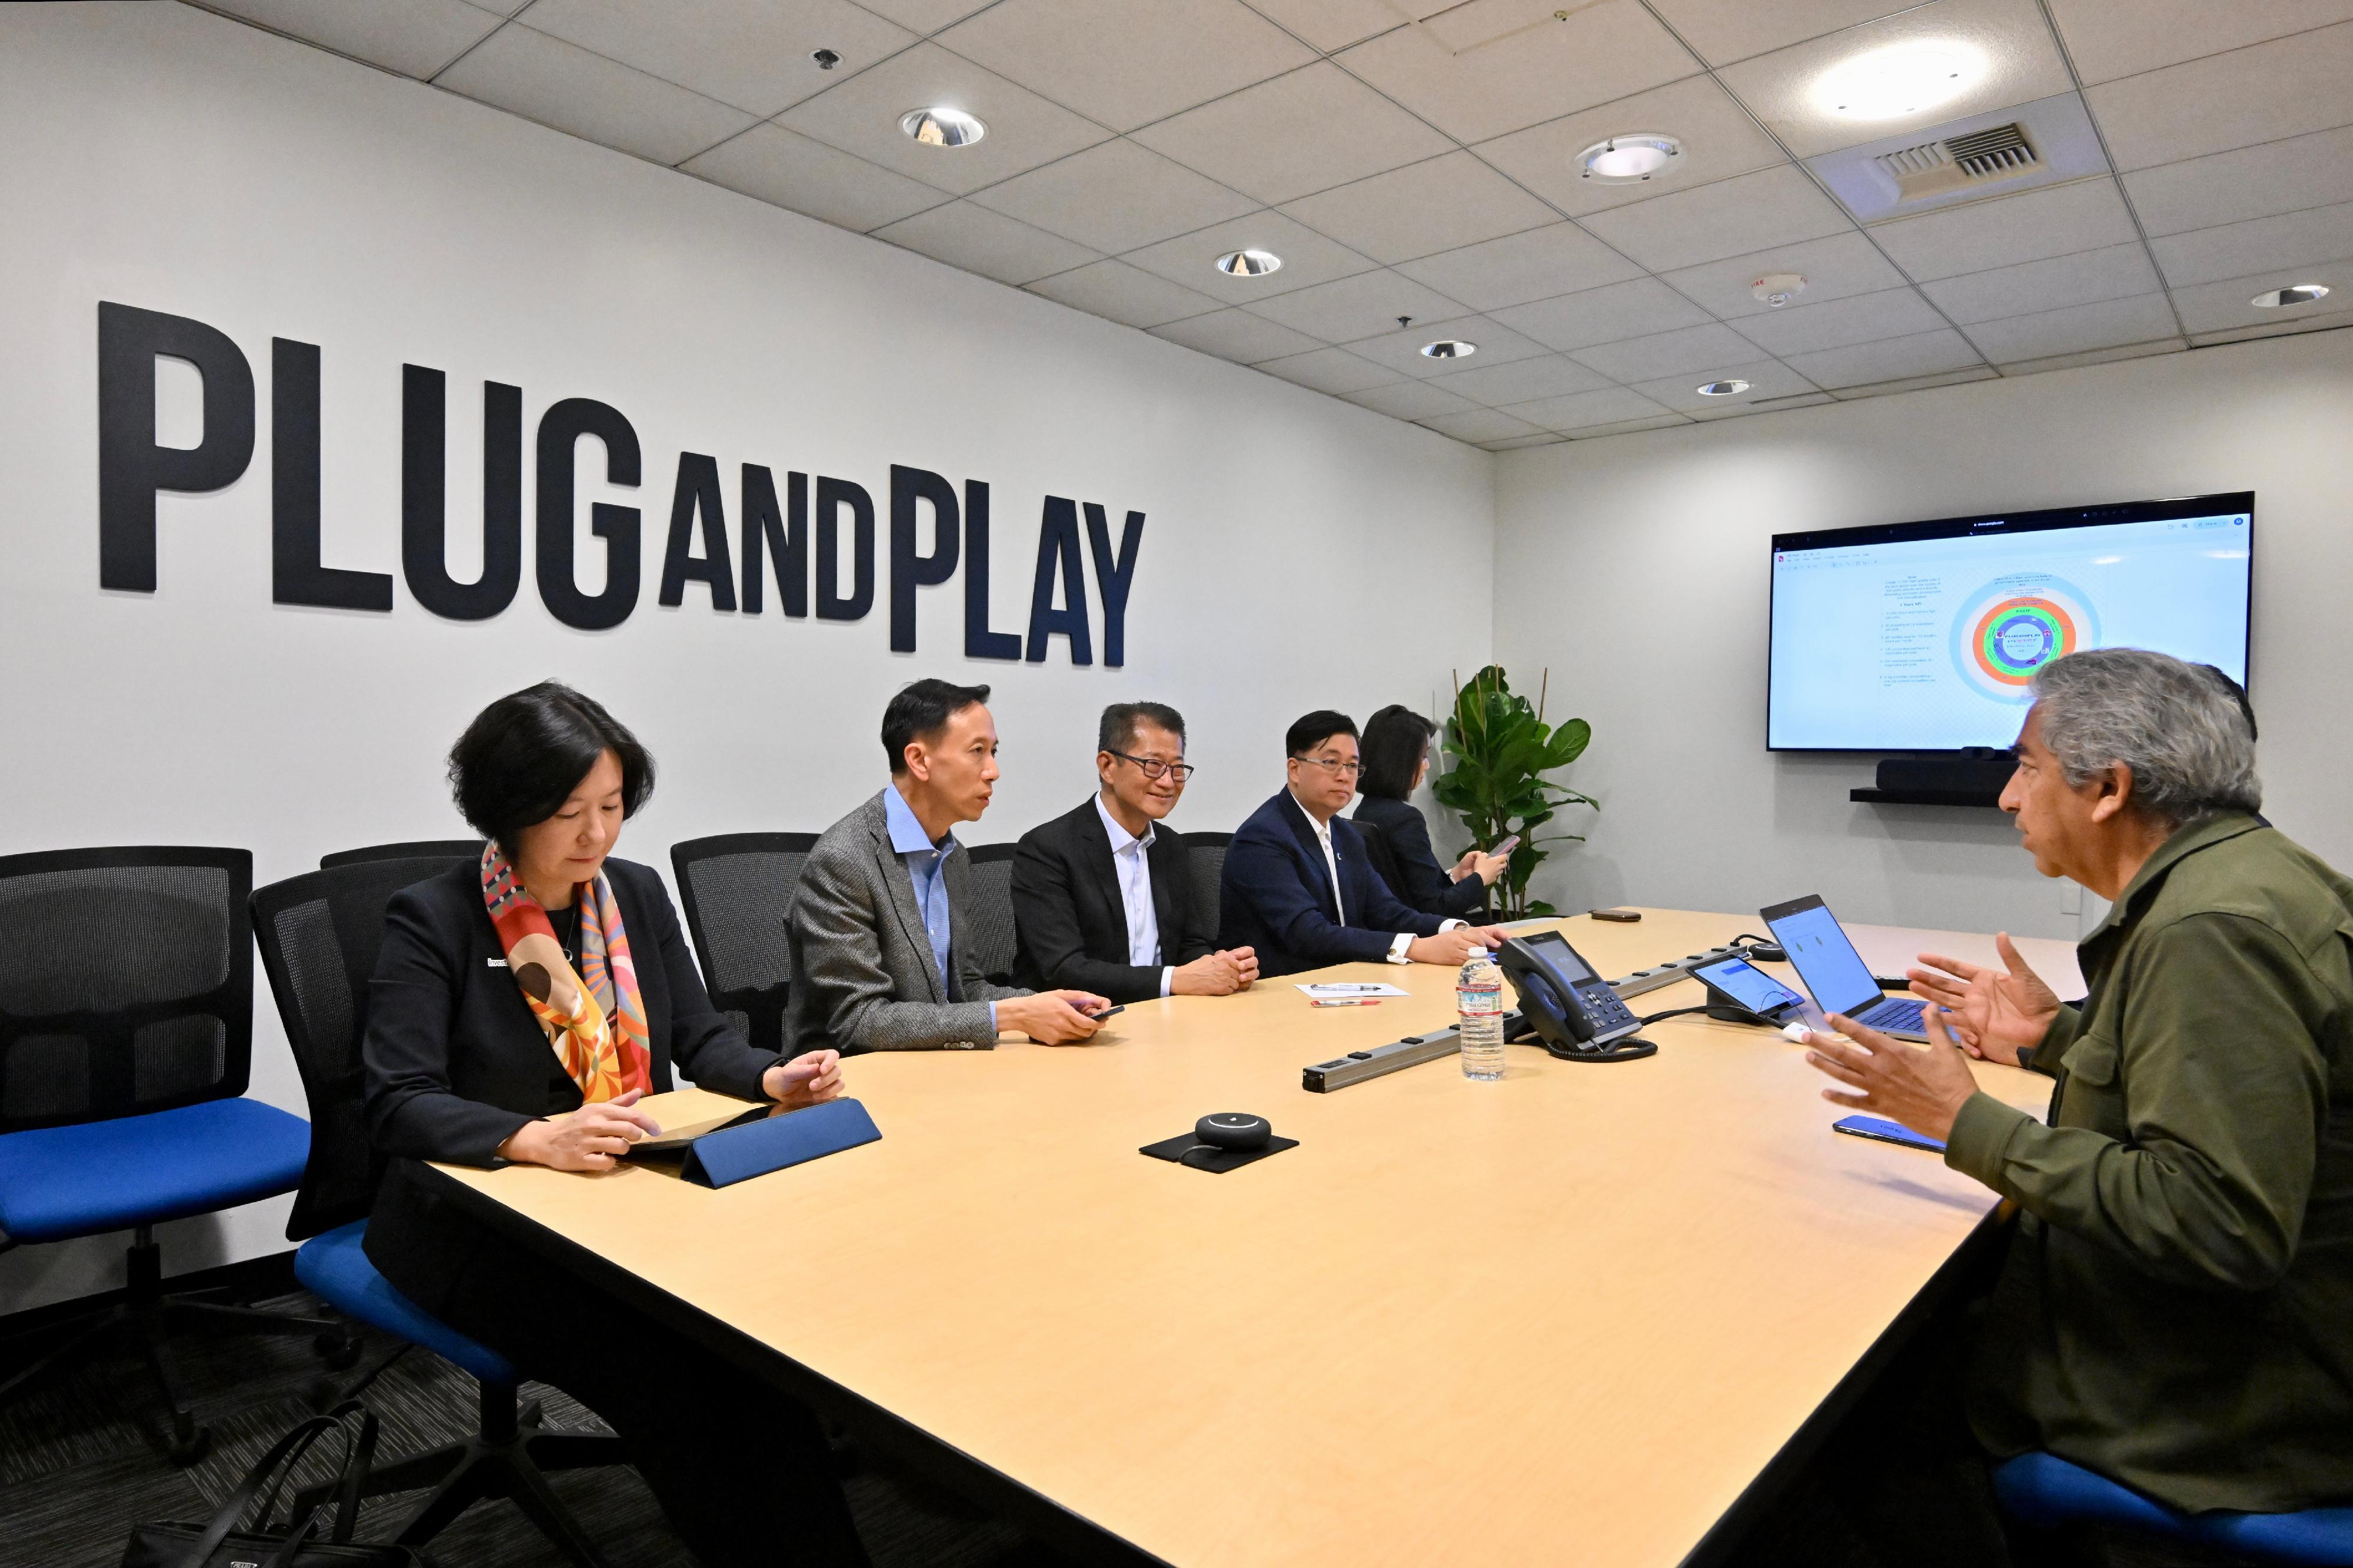 财政司司长陈茂波五月二十八日（三藩市时间）展开美国访问行程，并到访矽谷初创加速器Plug and Play。图示陈茂波（左三）与Plug and Play创办人之一Rahim Amidi（右一）会面。